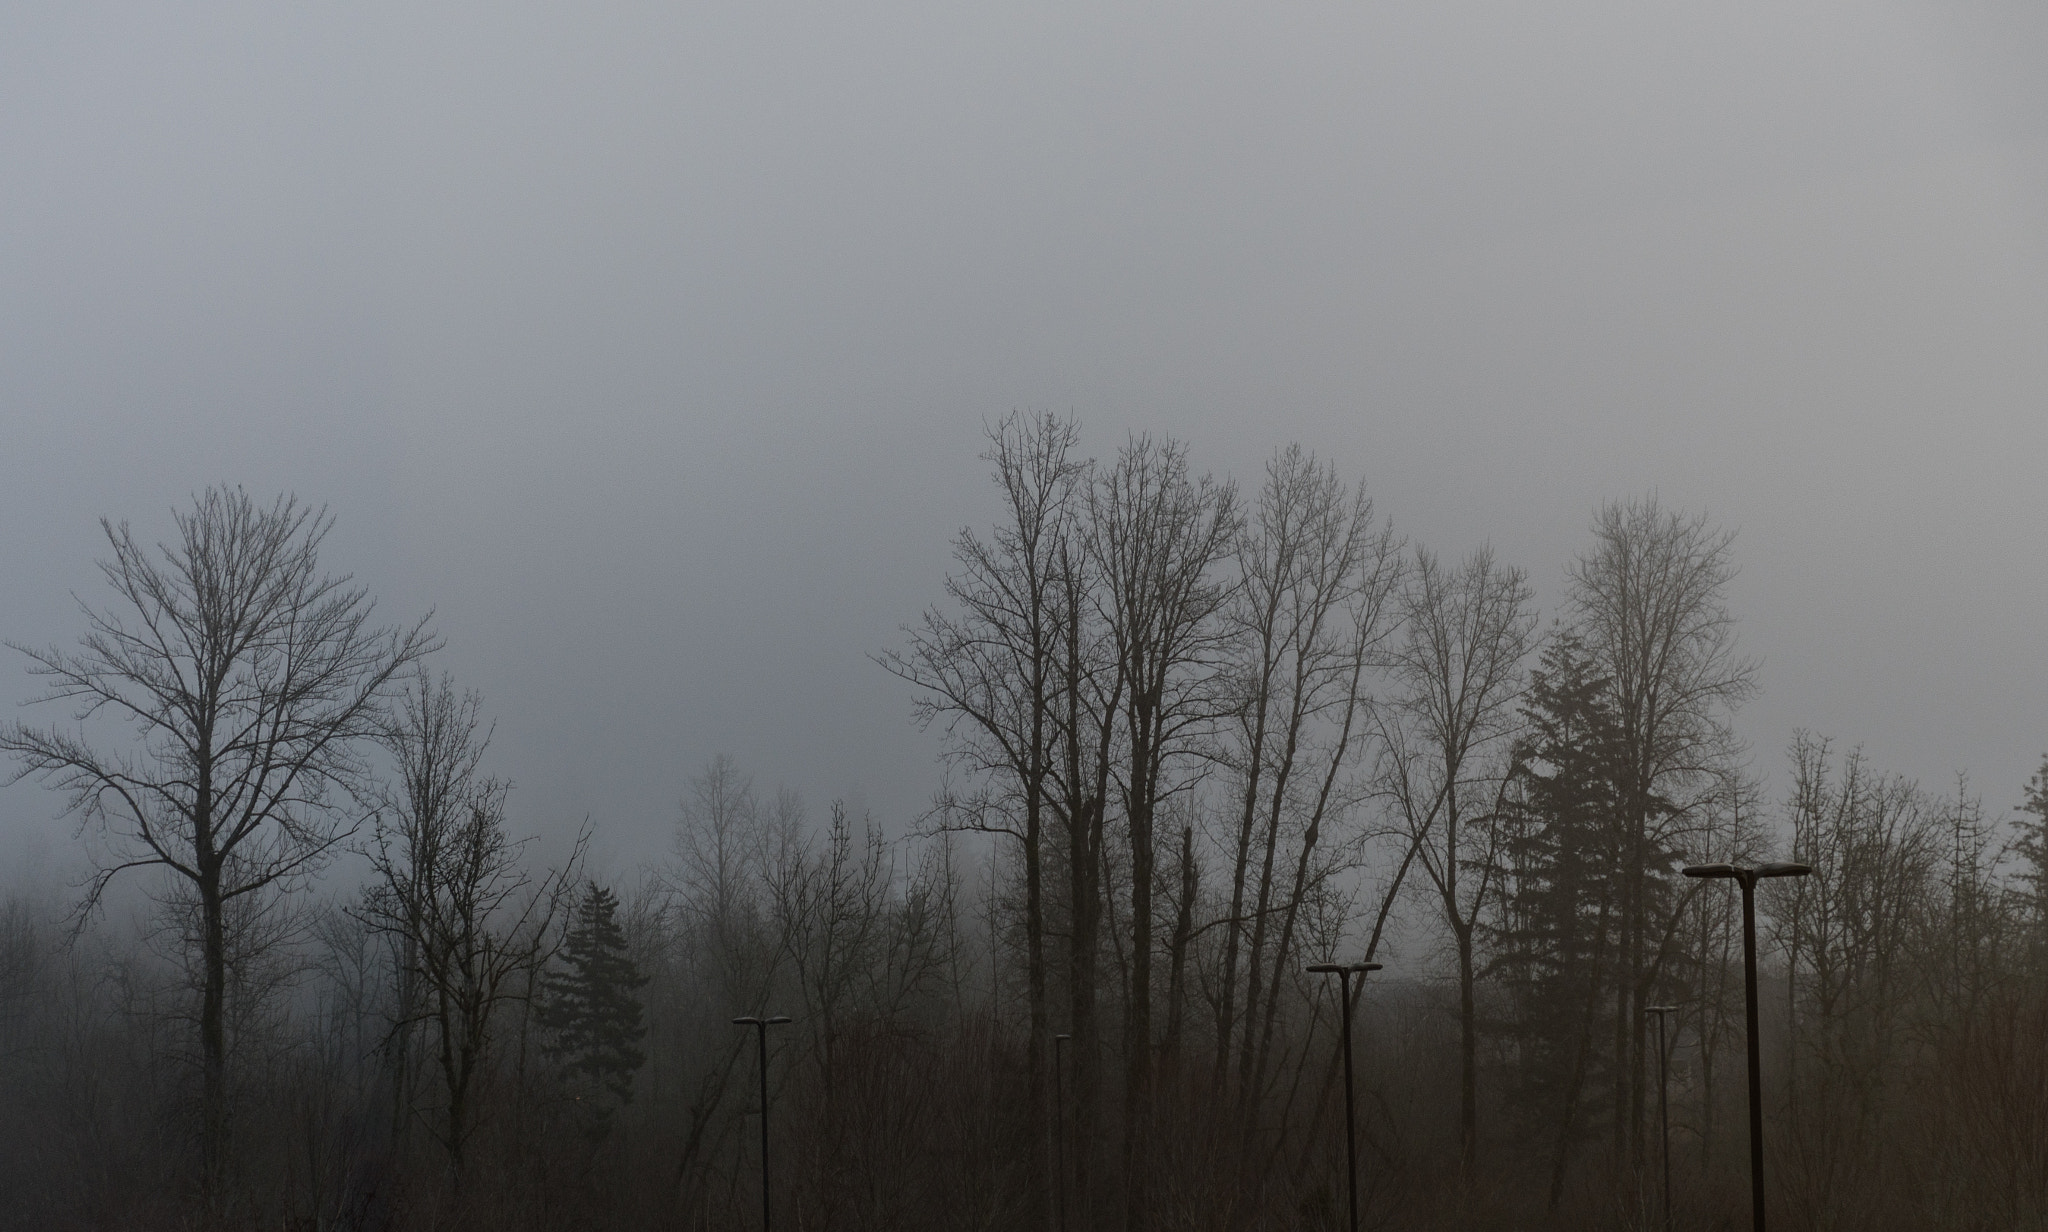 Nikon D500 sample photo. Foggy forest photography